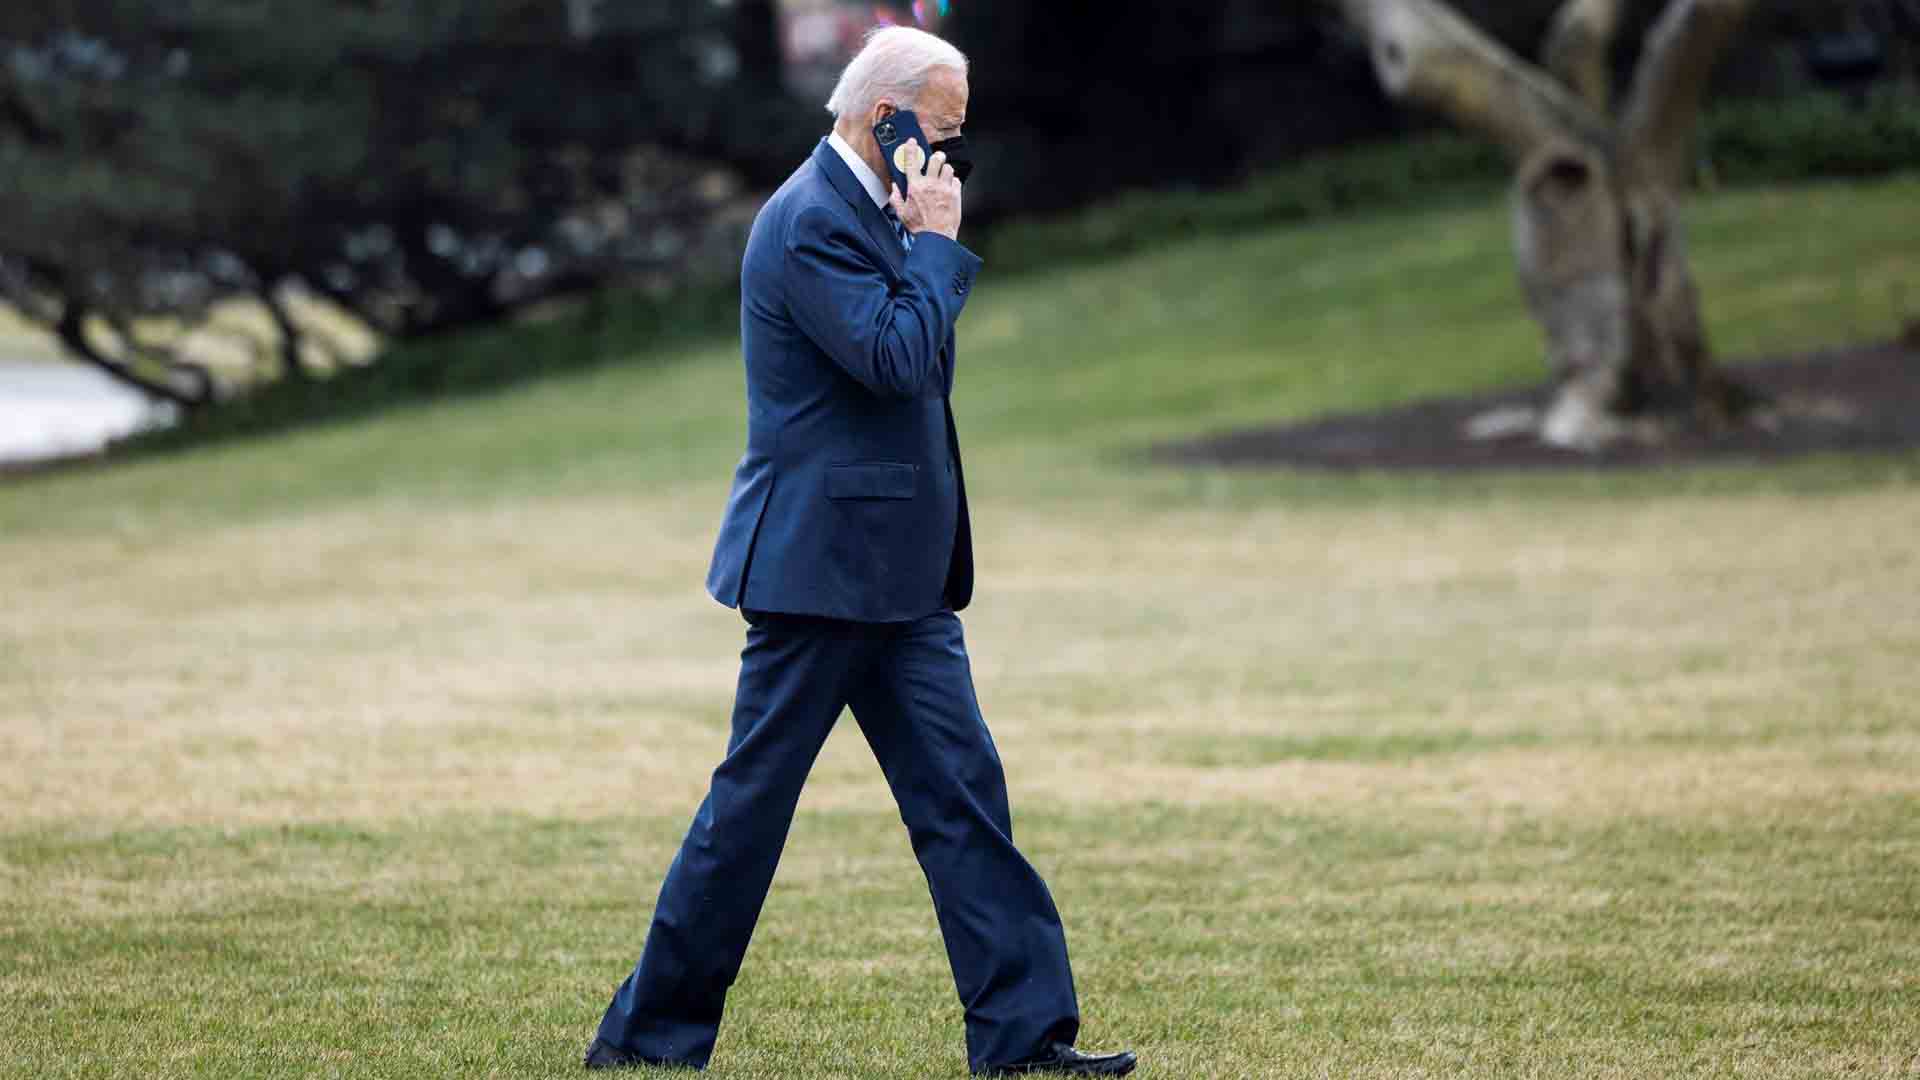 Biden hablará sobre Ucrania el viernes con varios líderes occidentales